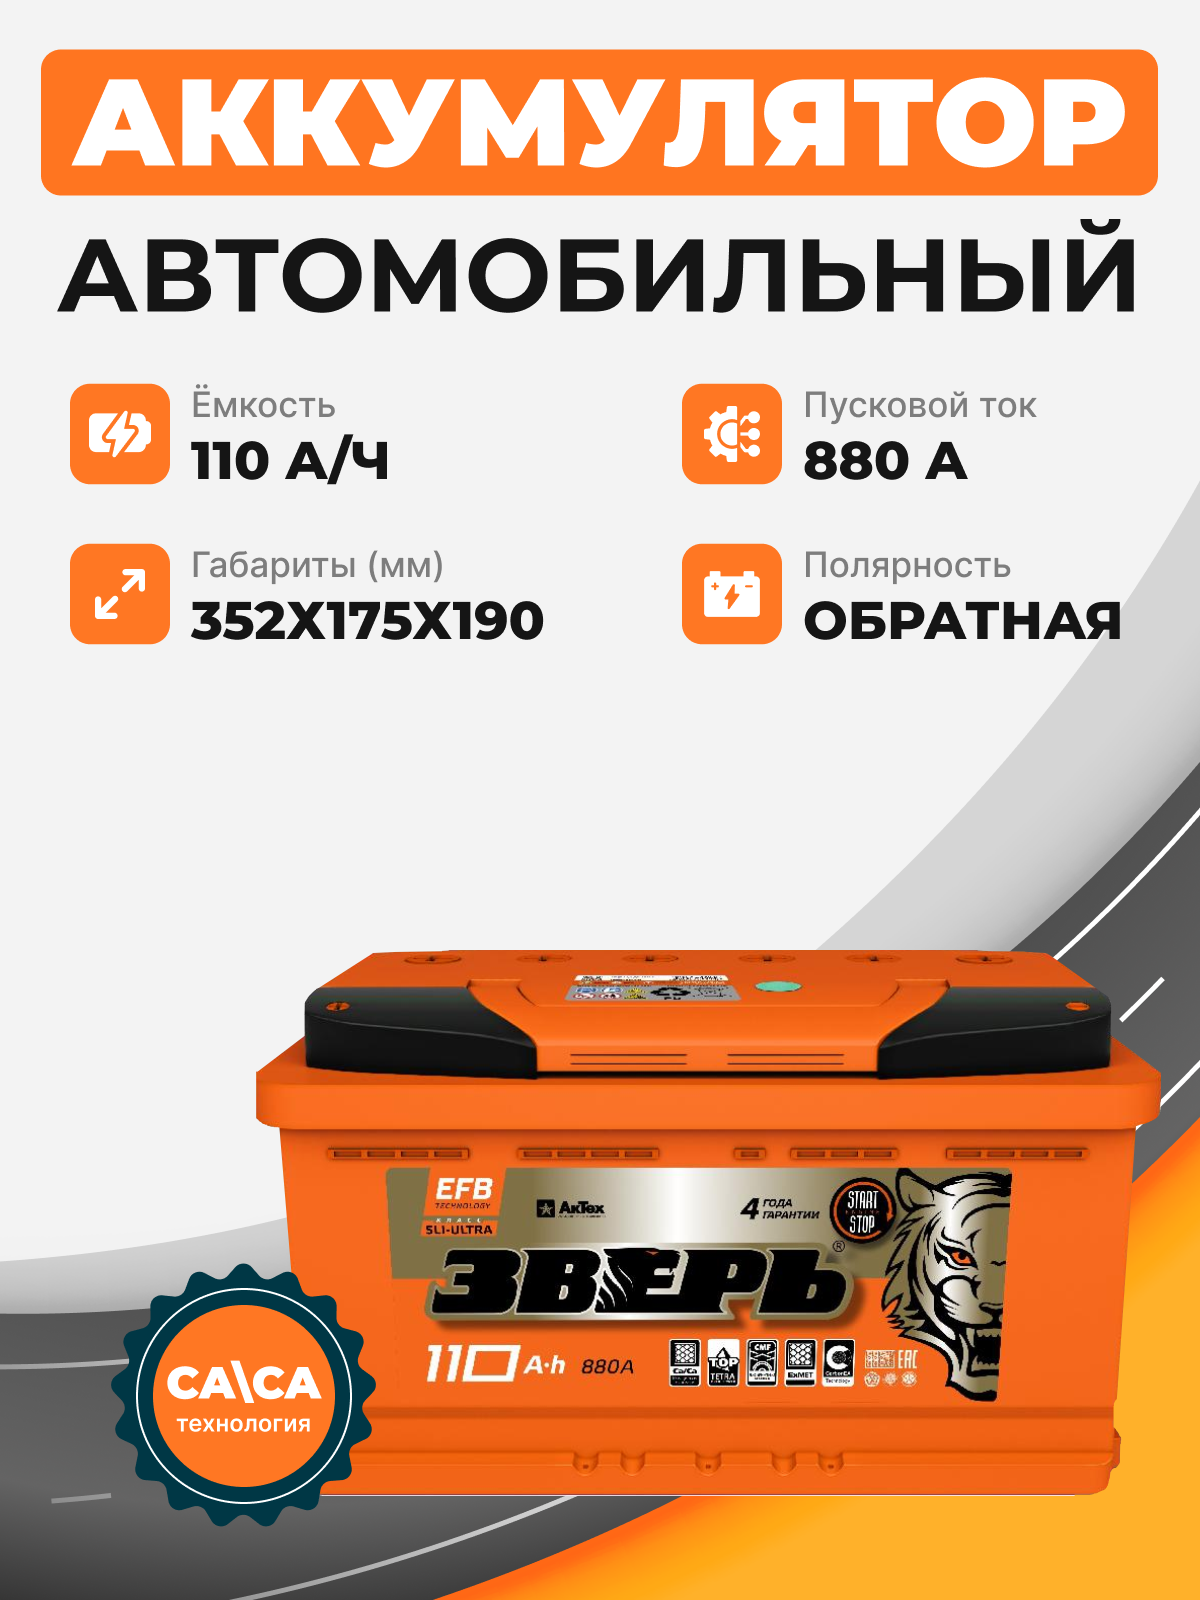 Аккумулятор Зверь EFB 110 о.п. стартовый ток 880 EN ZVEFB 110-3-R